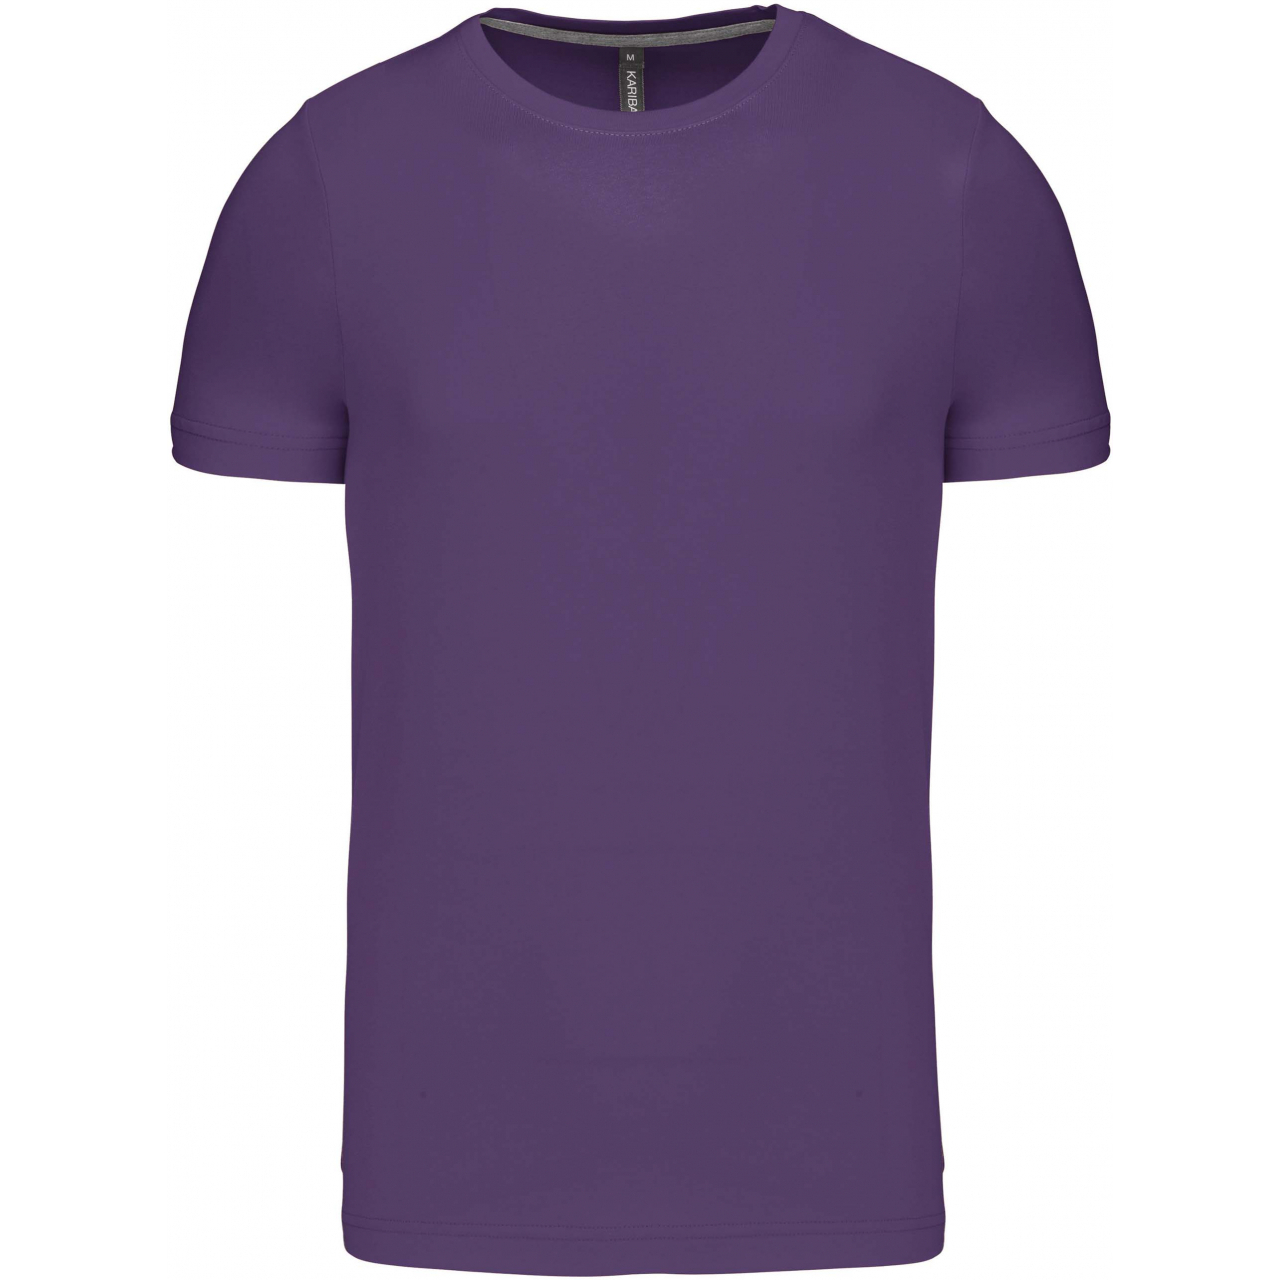 Pánské tričko Kariban krátký rukáv - fialové, 3XL